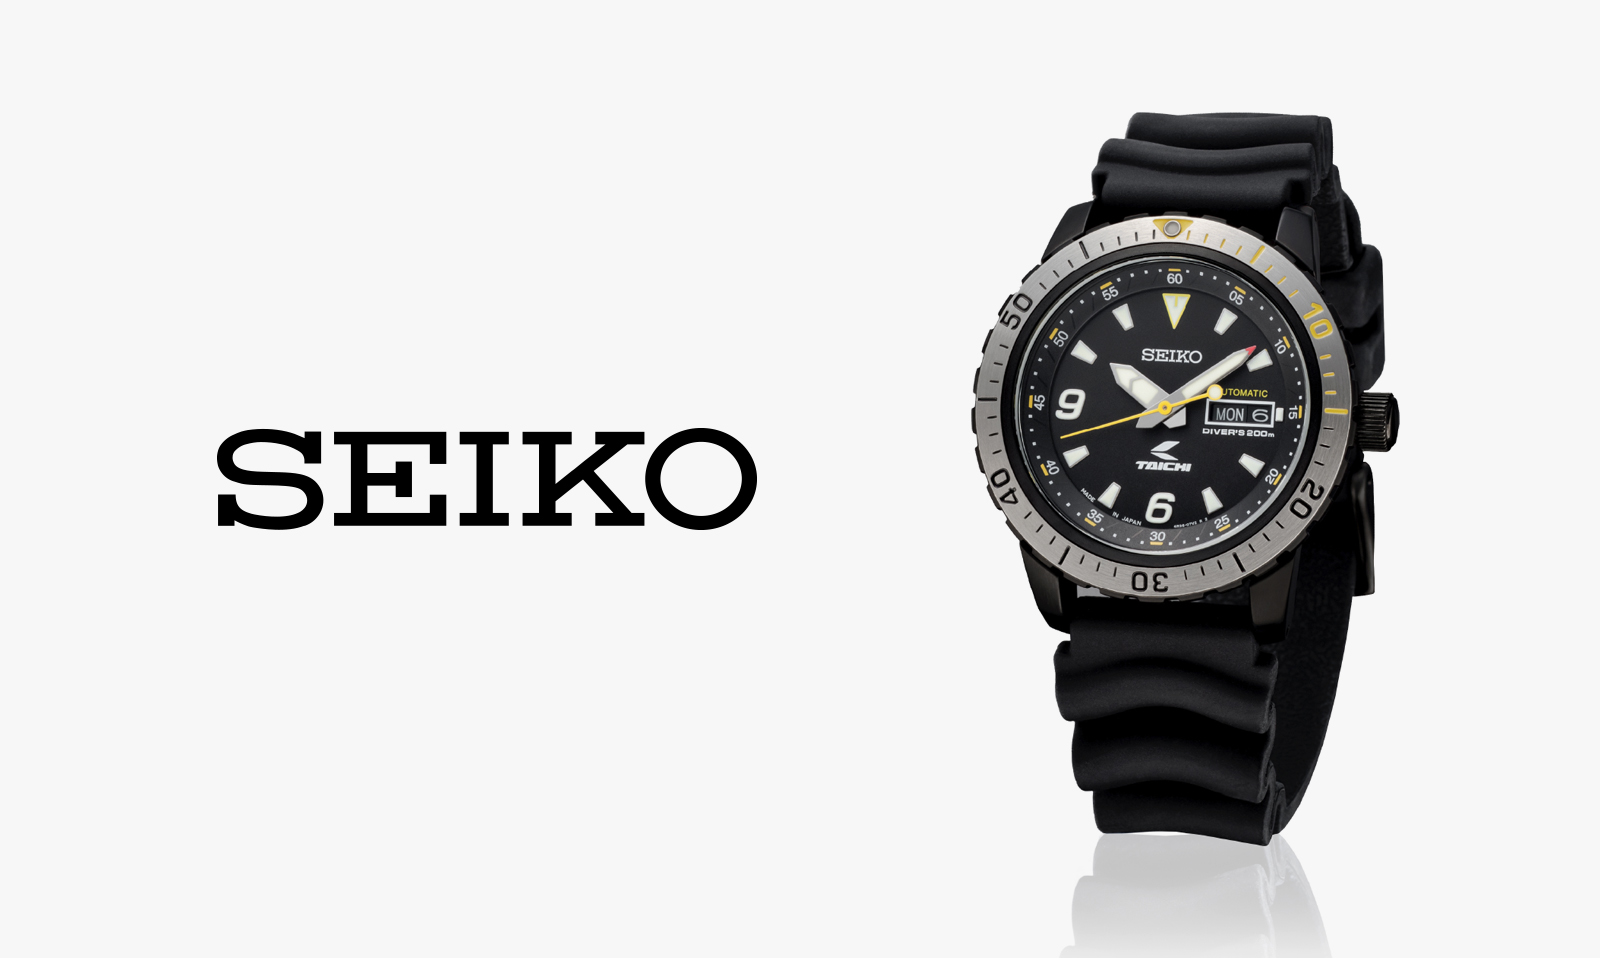 時計メーカーSeikoとのコラボレーションによるダイバーズウォッチを発売